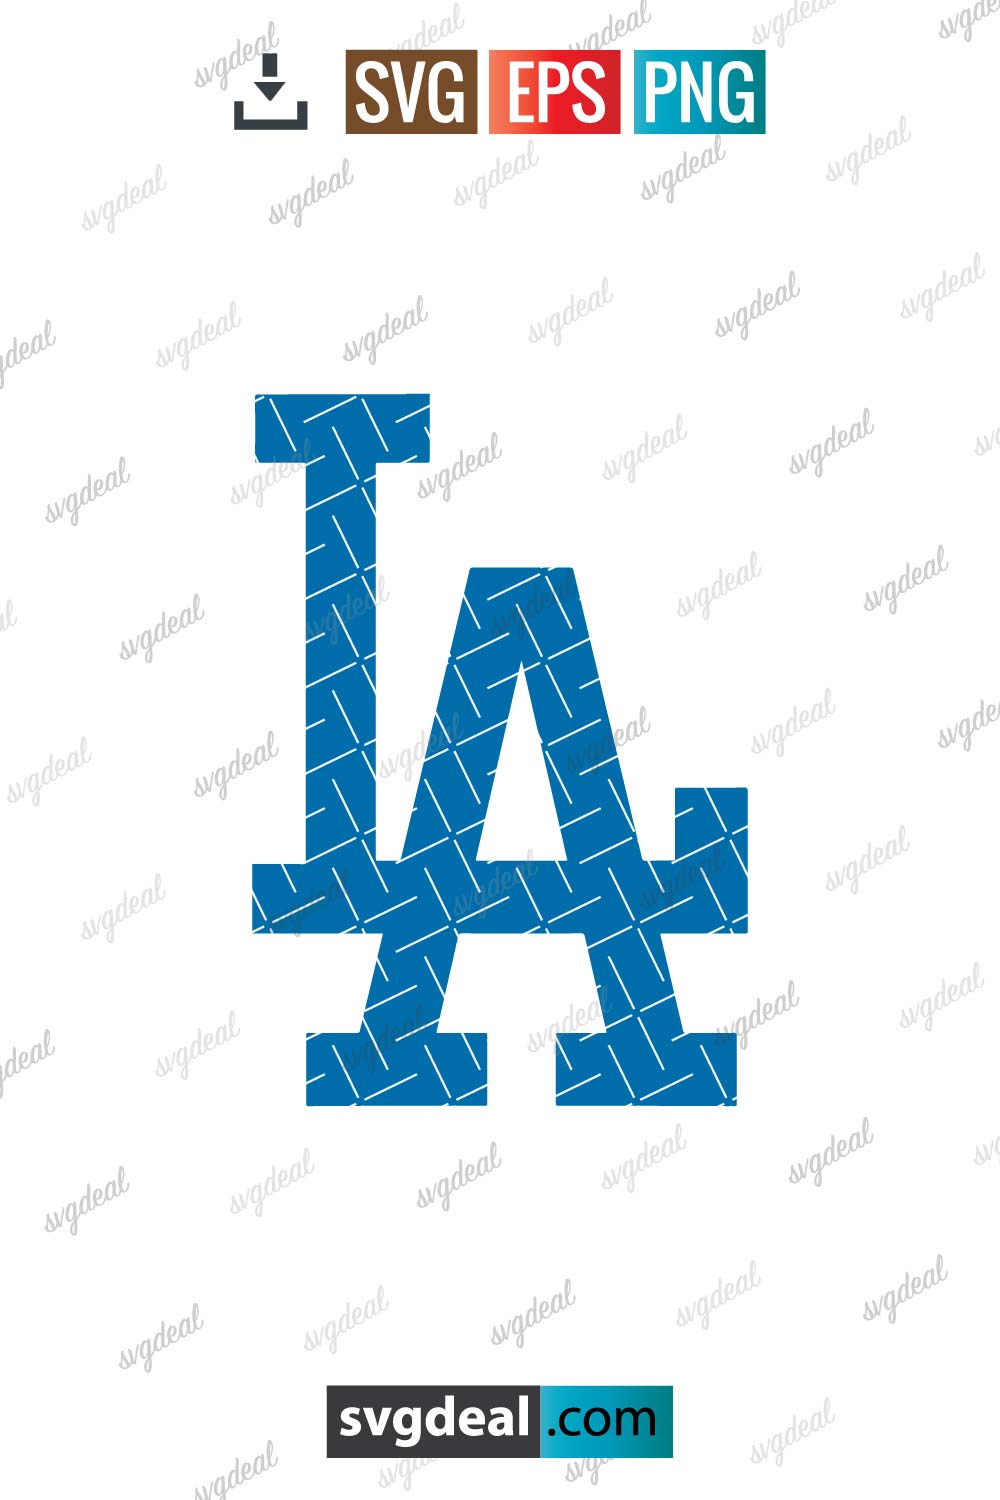 LA Dodgers SVG free for Cricut, Los Angeles Dodgers SVG